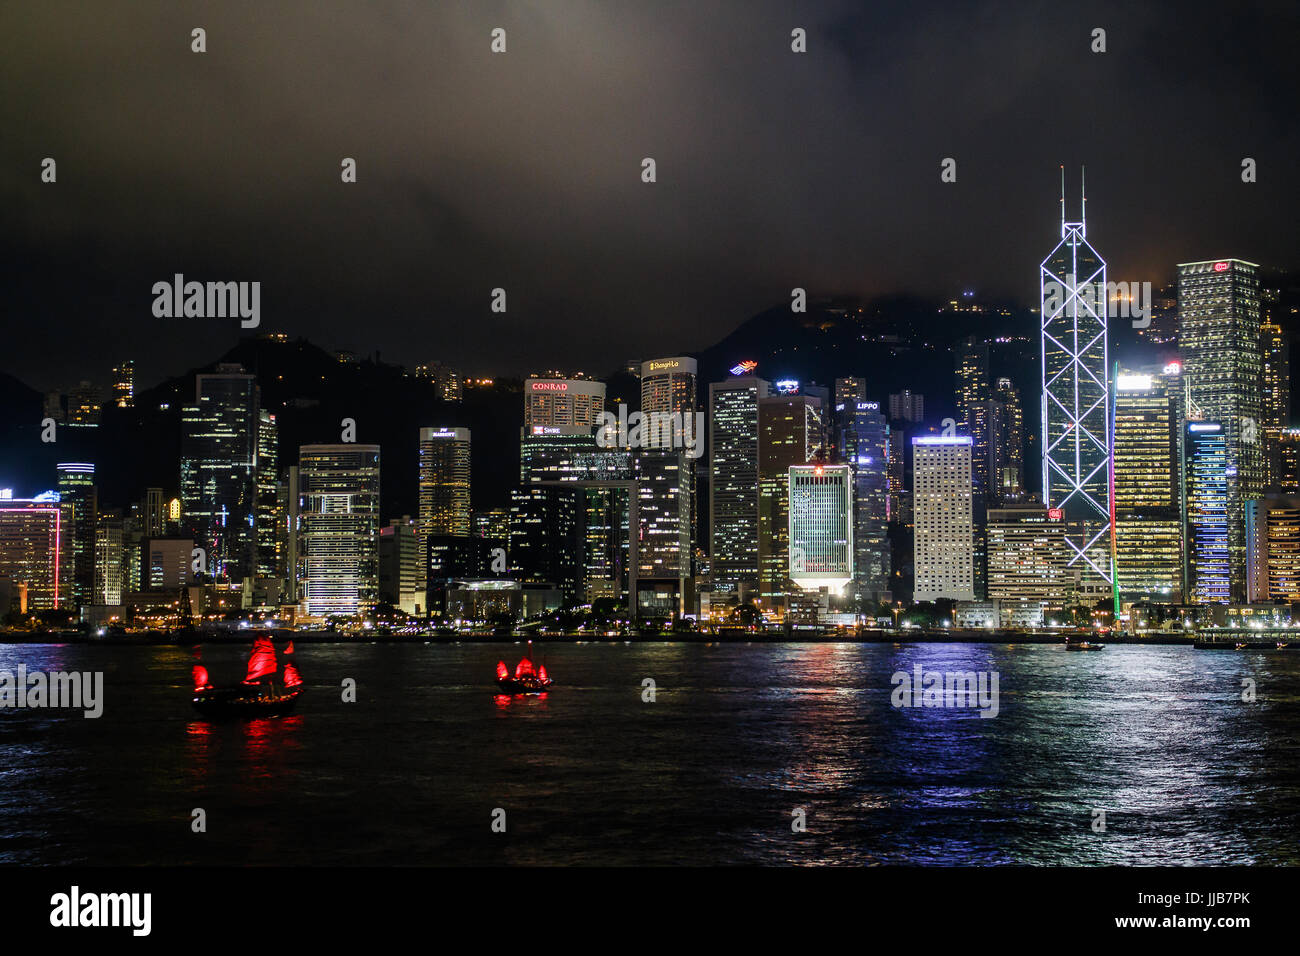 Dynamic image of Victoria Harbor, Hong Kong at night Stock Photo